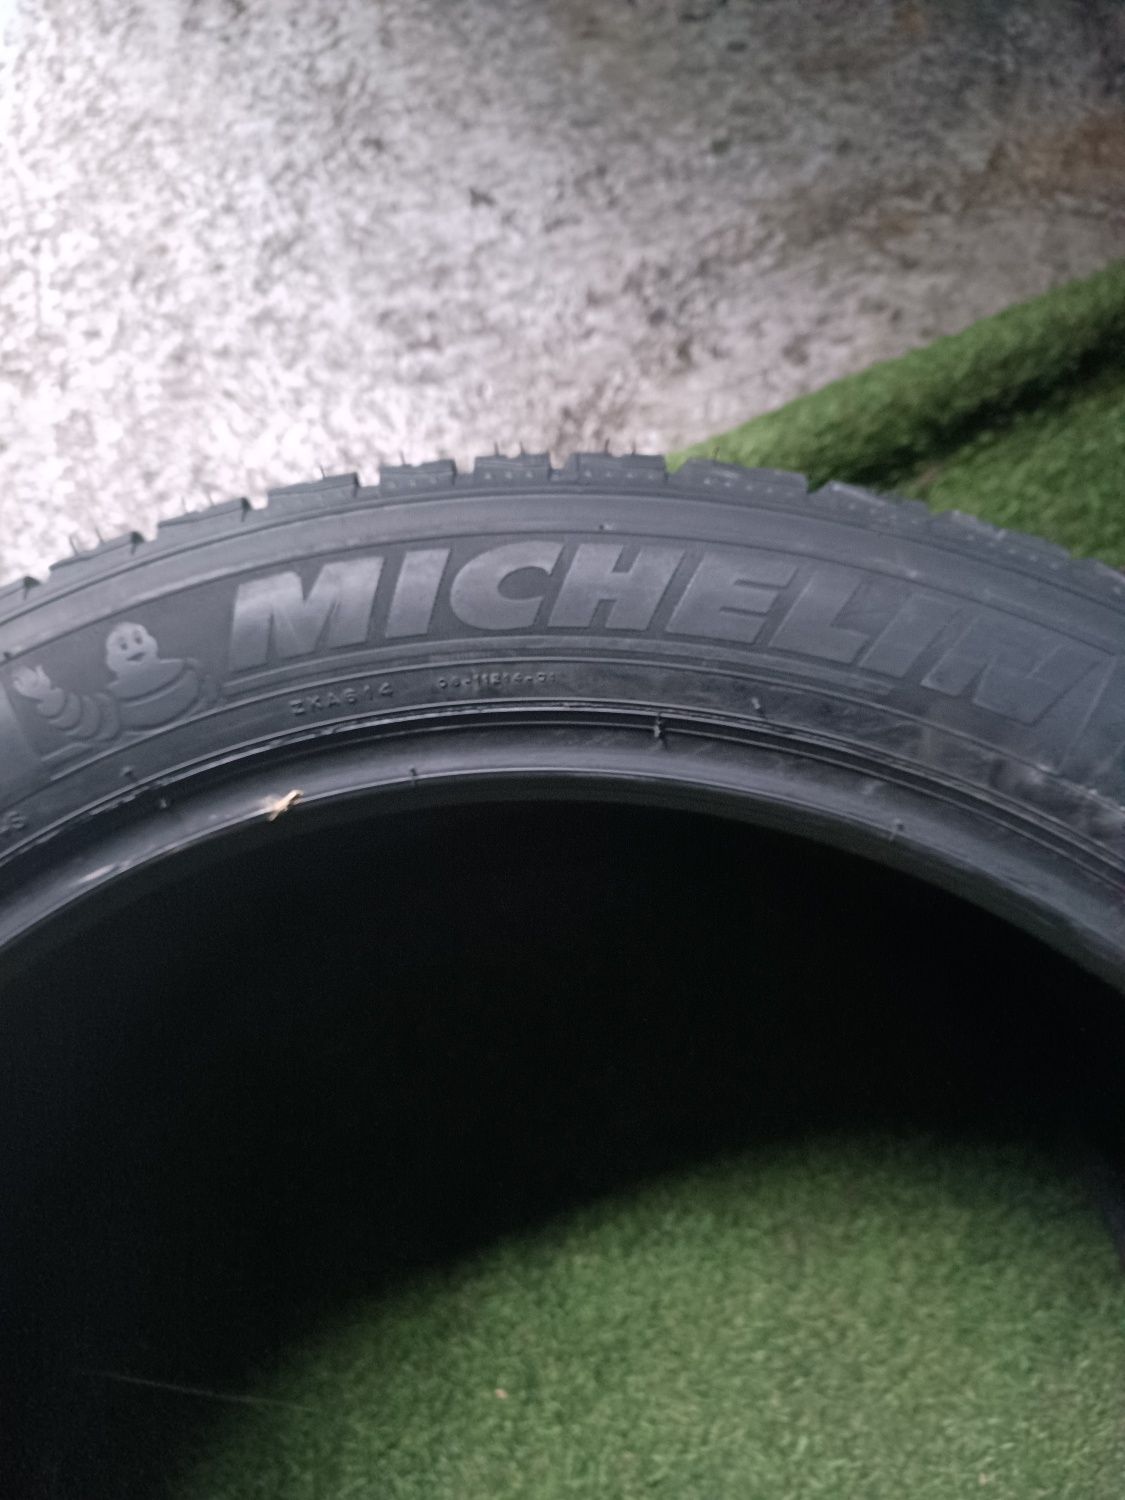 295.40.20 Michelin m+s